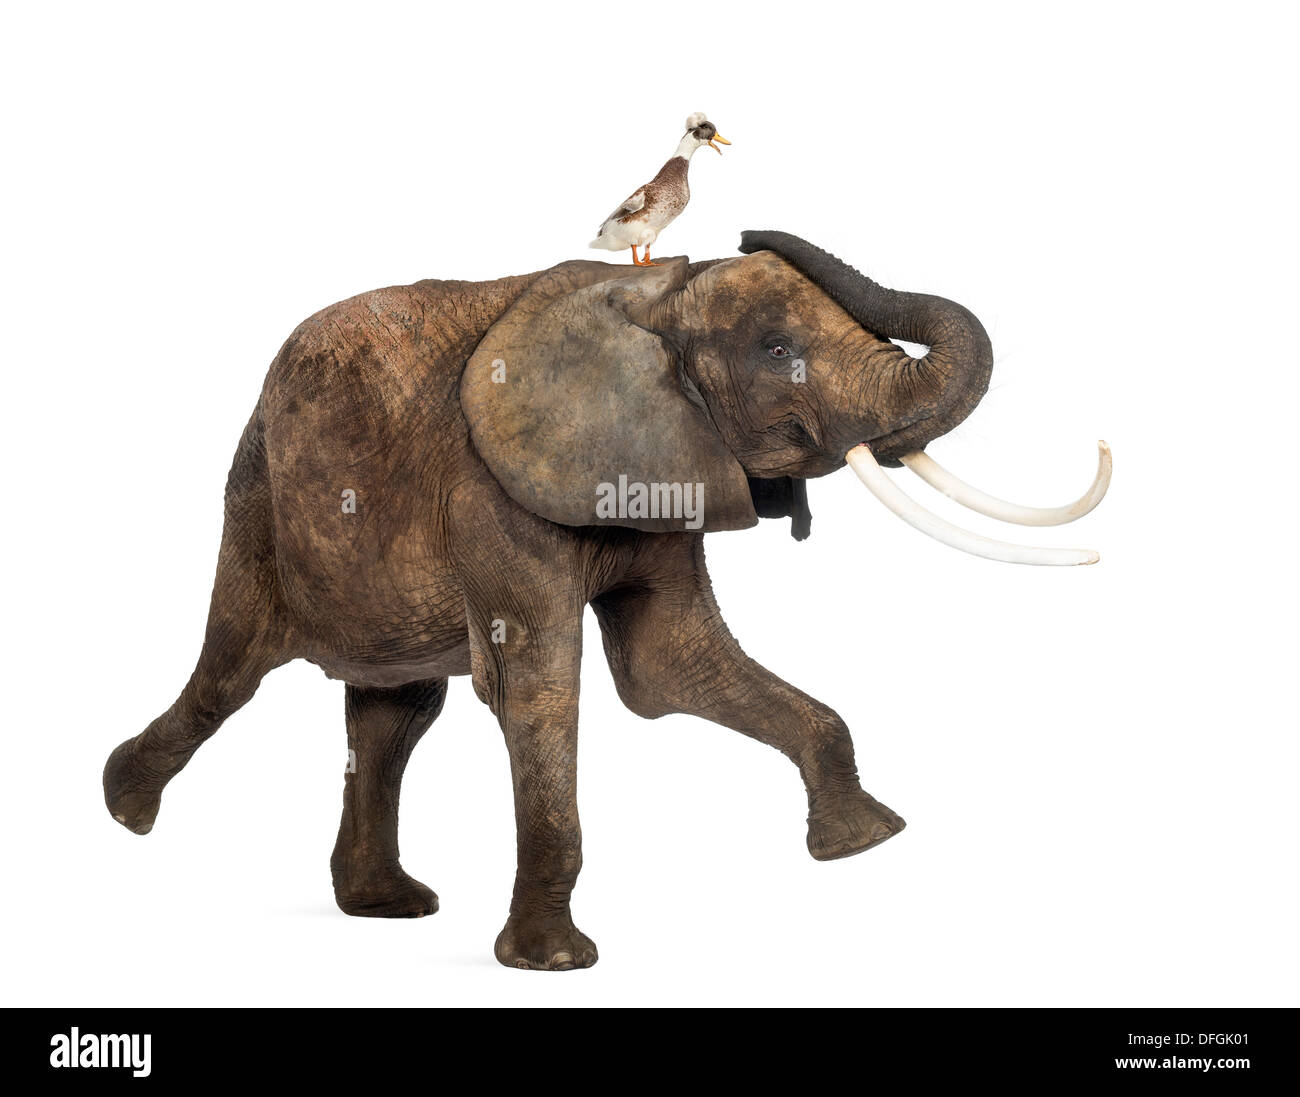 Afrikanischer Elefant, Loxodonta Africana, tanzen mit Haubenmeise Ente vor weißem Hintergrund Stockfoto